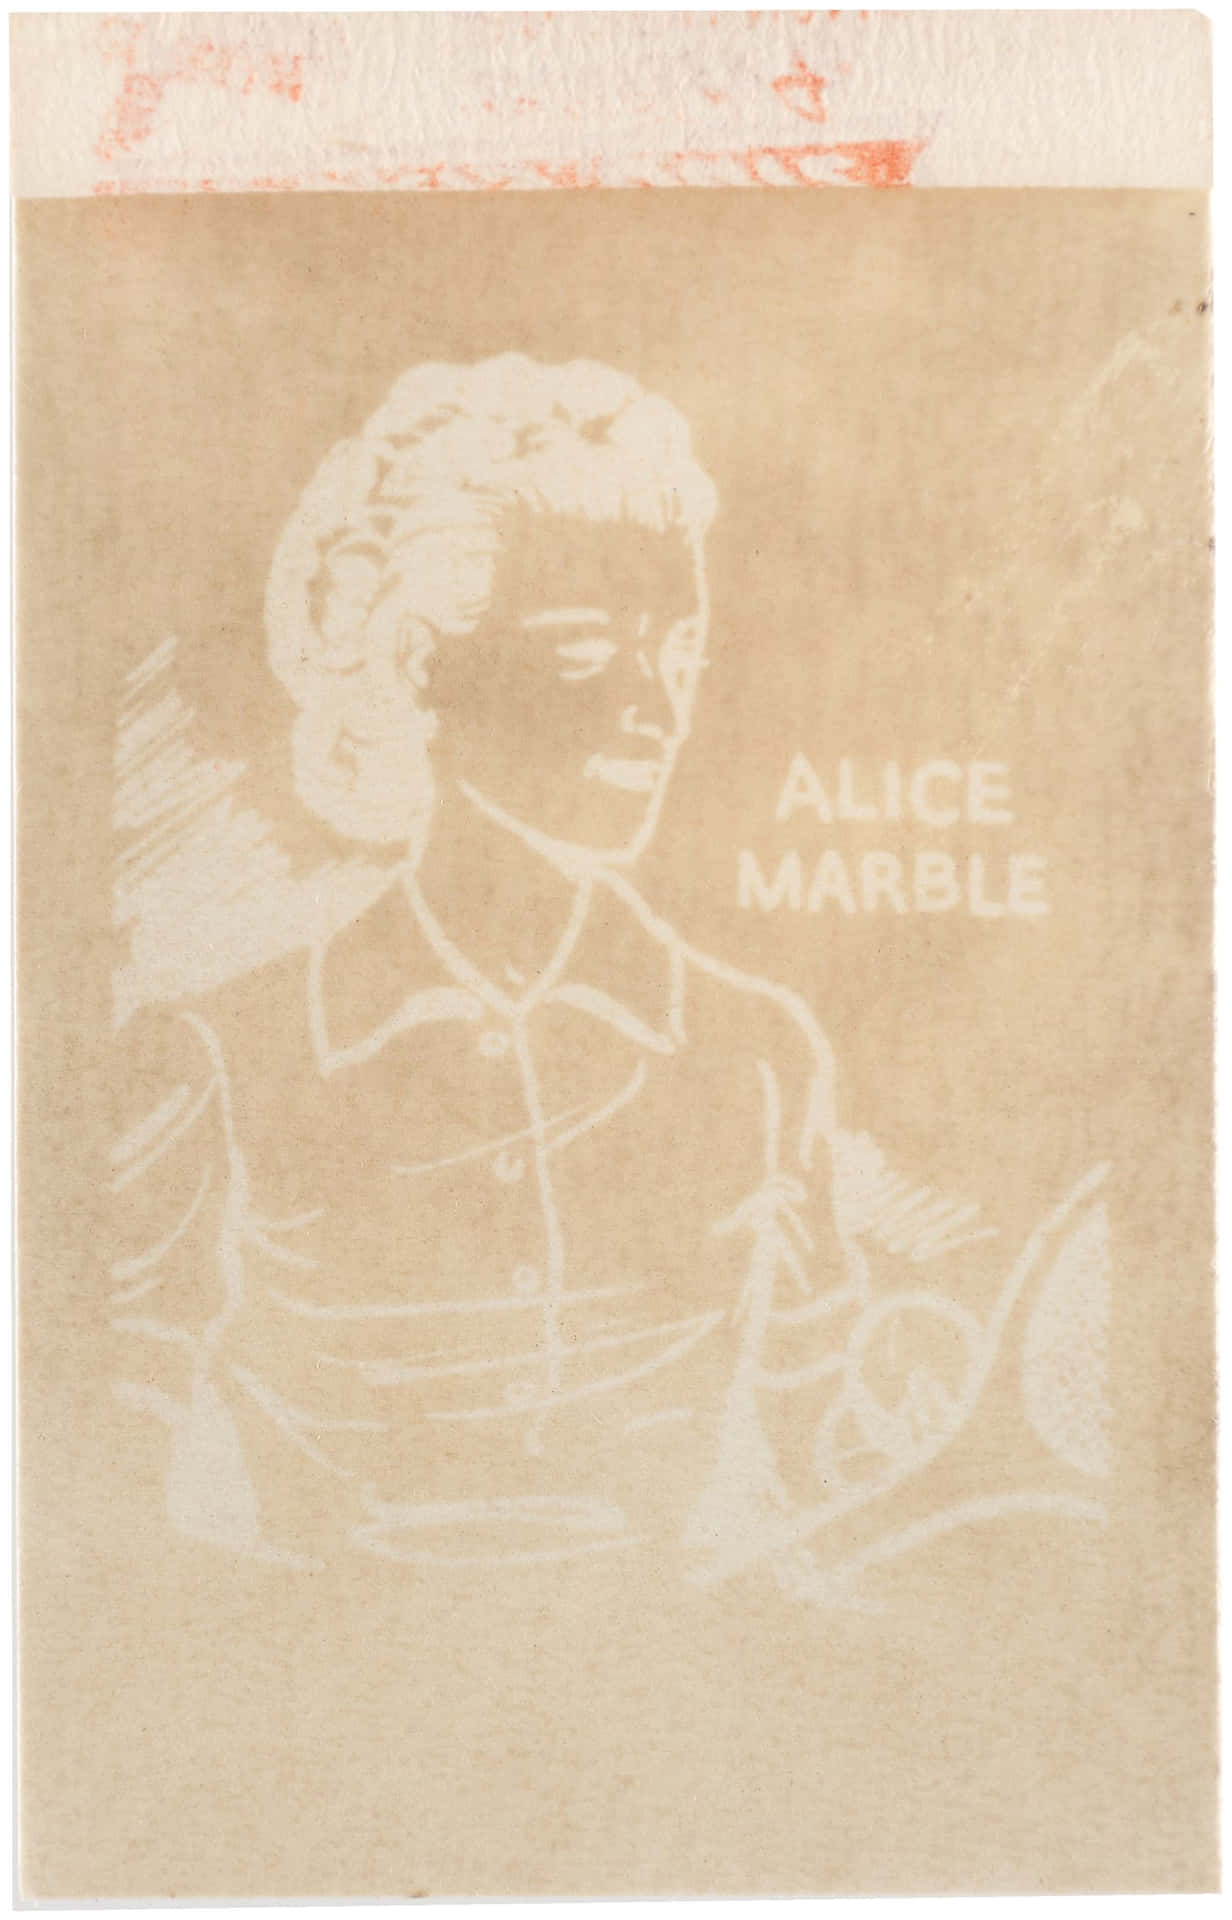 Jogadorade Tênis Americana Alice Marble Em Obra De Arte De Fundo De Tela Para Computador Ou Celular. Papel de Parede